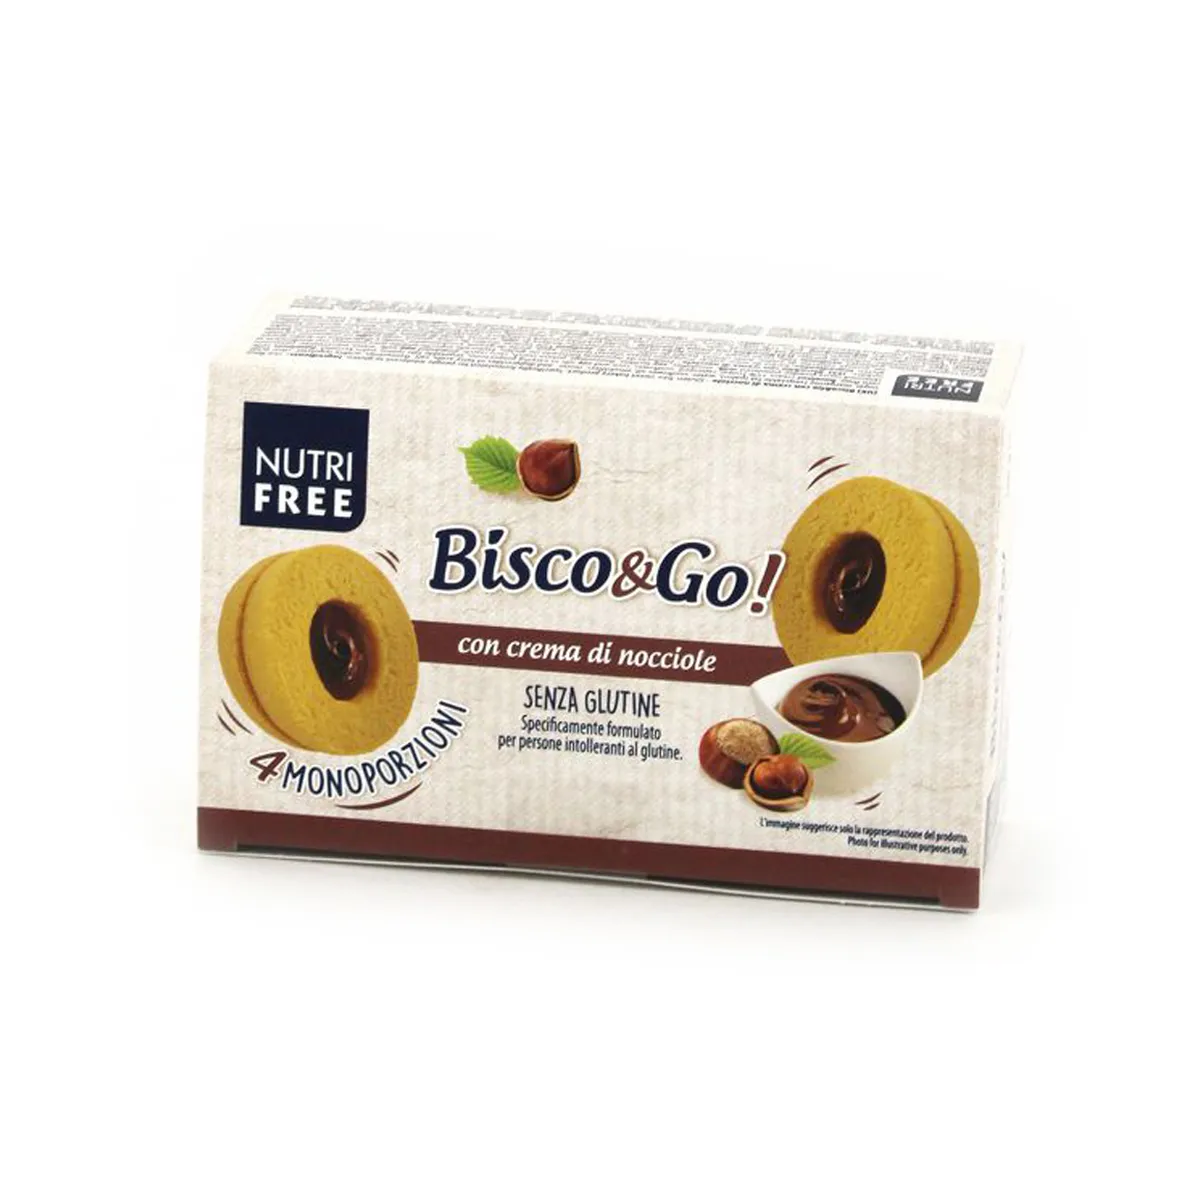 Nutrifree Bisco&Go biscuiti cu alune x 160 grame